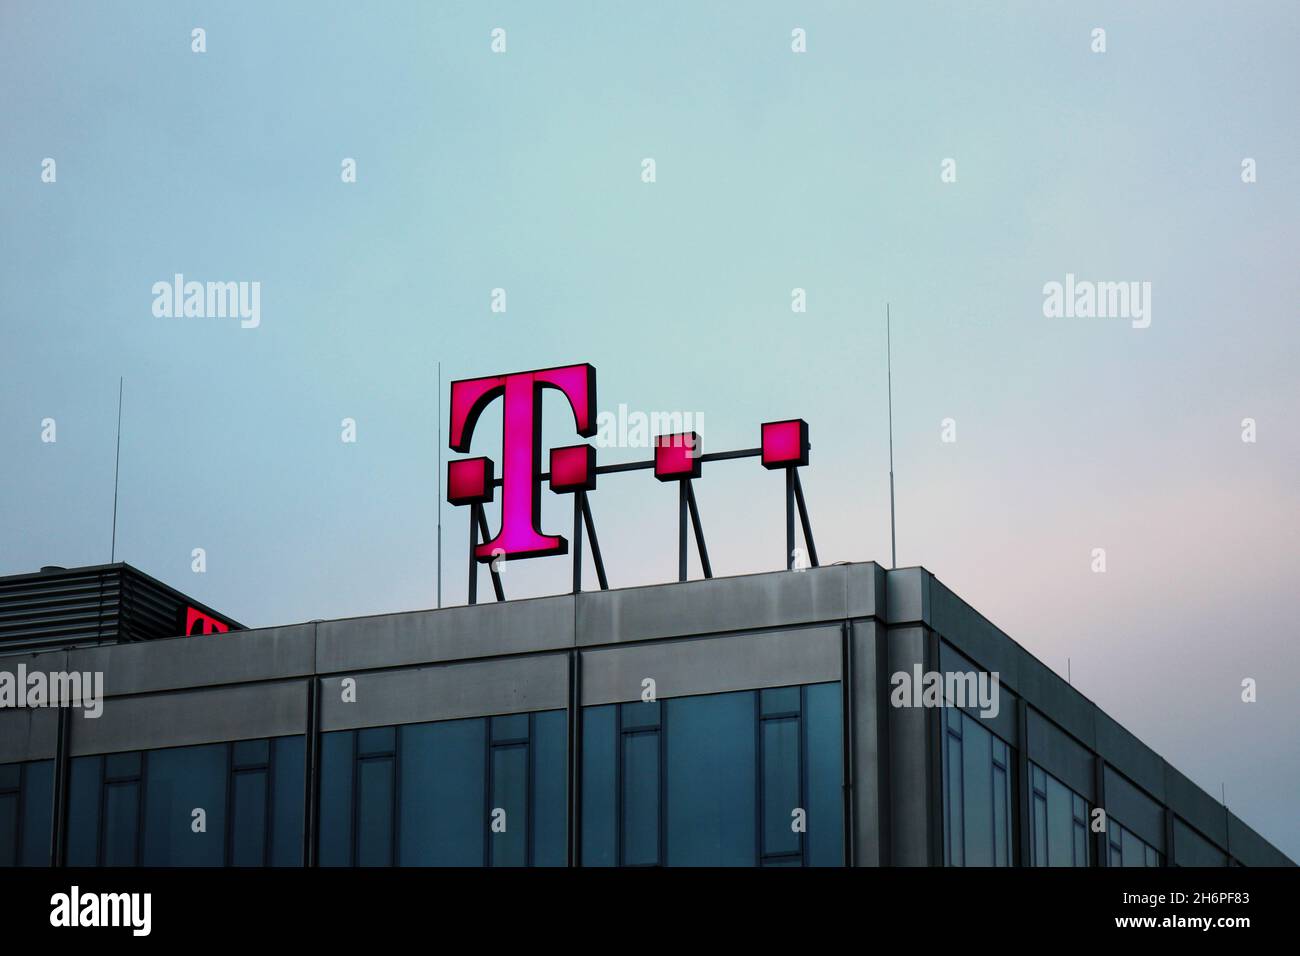 Das magenta farbene, leuchtende Telekom Logo der "Deutsche Telekom AG" auf dem Dach des Gebäudes der Telekom in der Abenddämmerung in Düsseldorf. Stock Photo